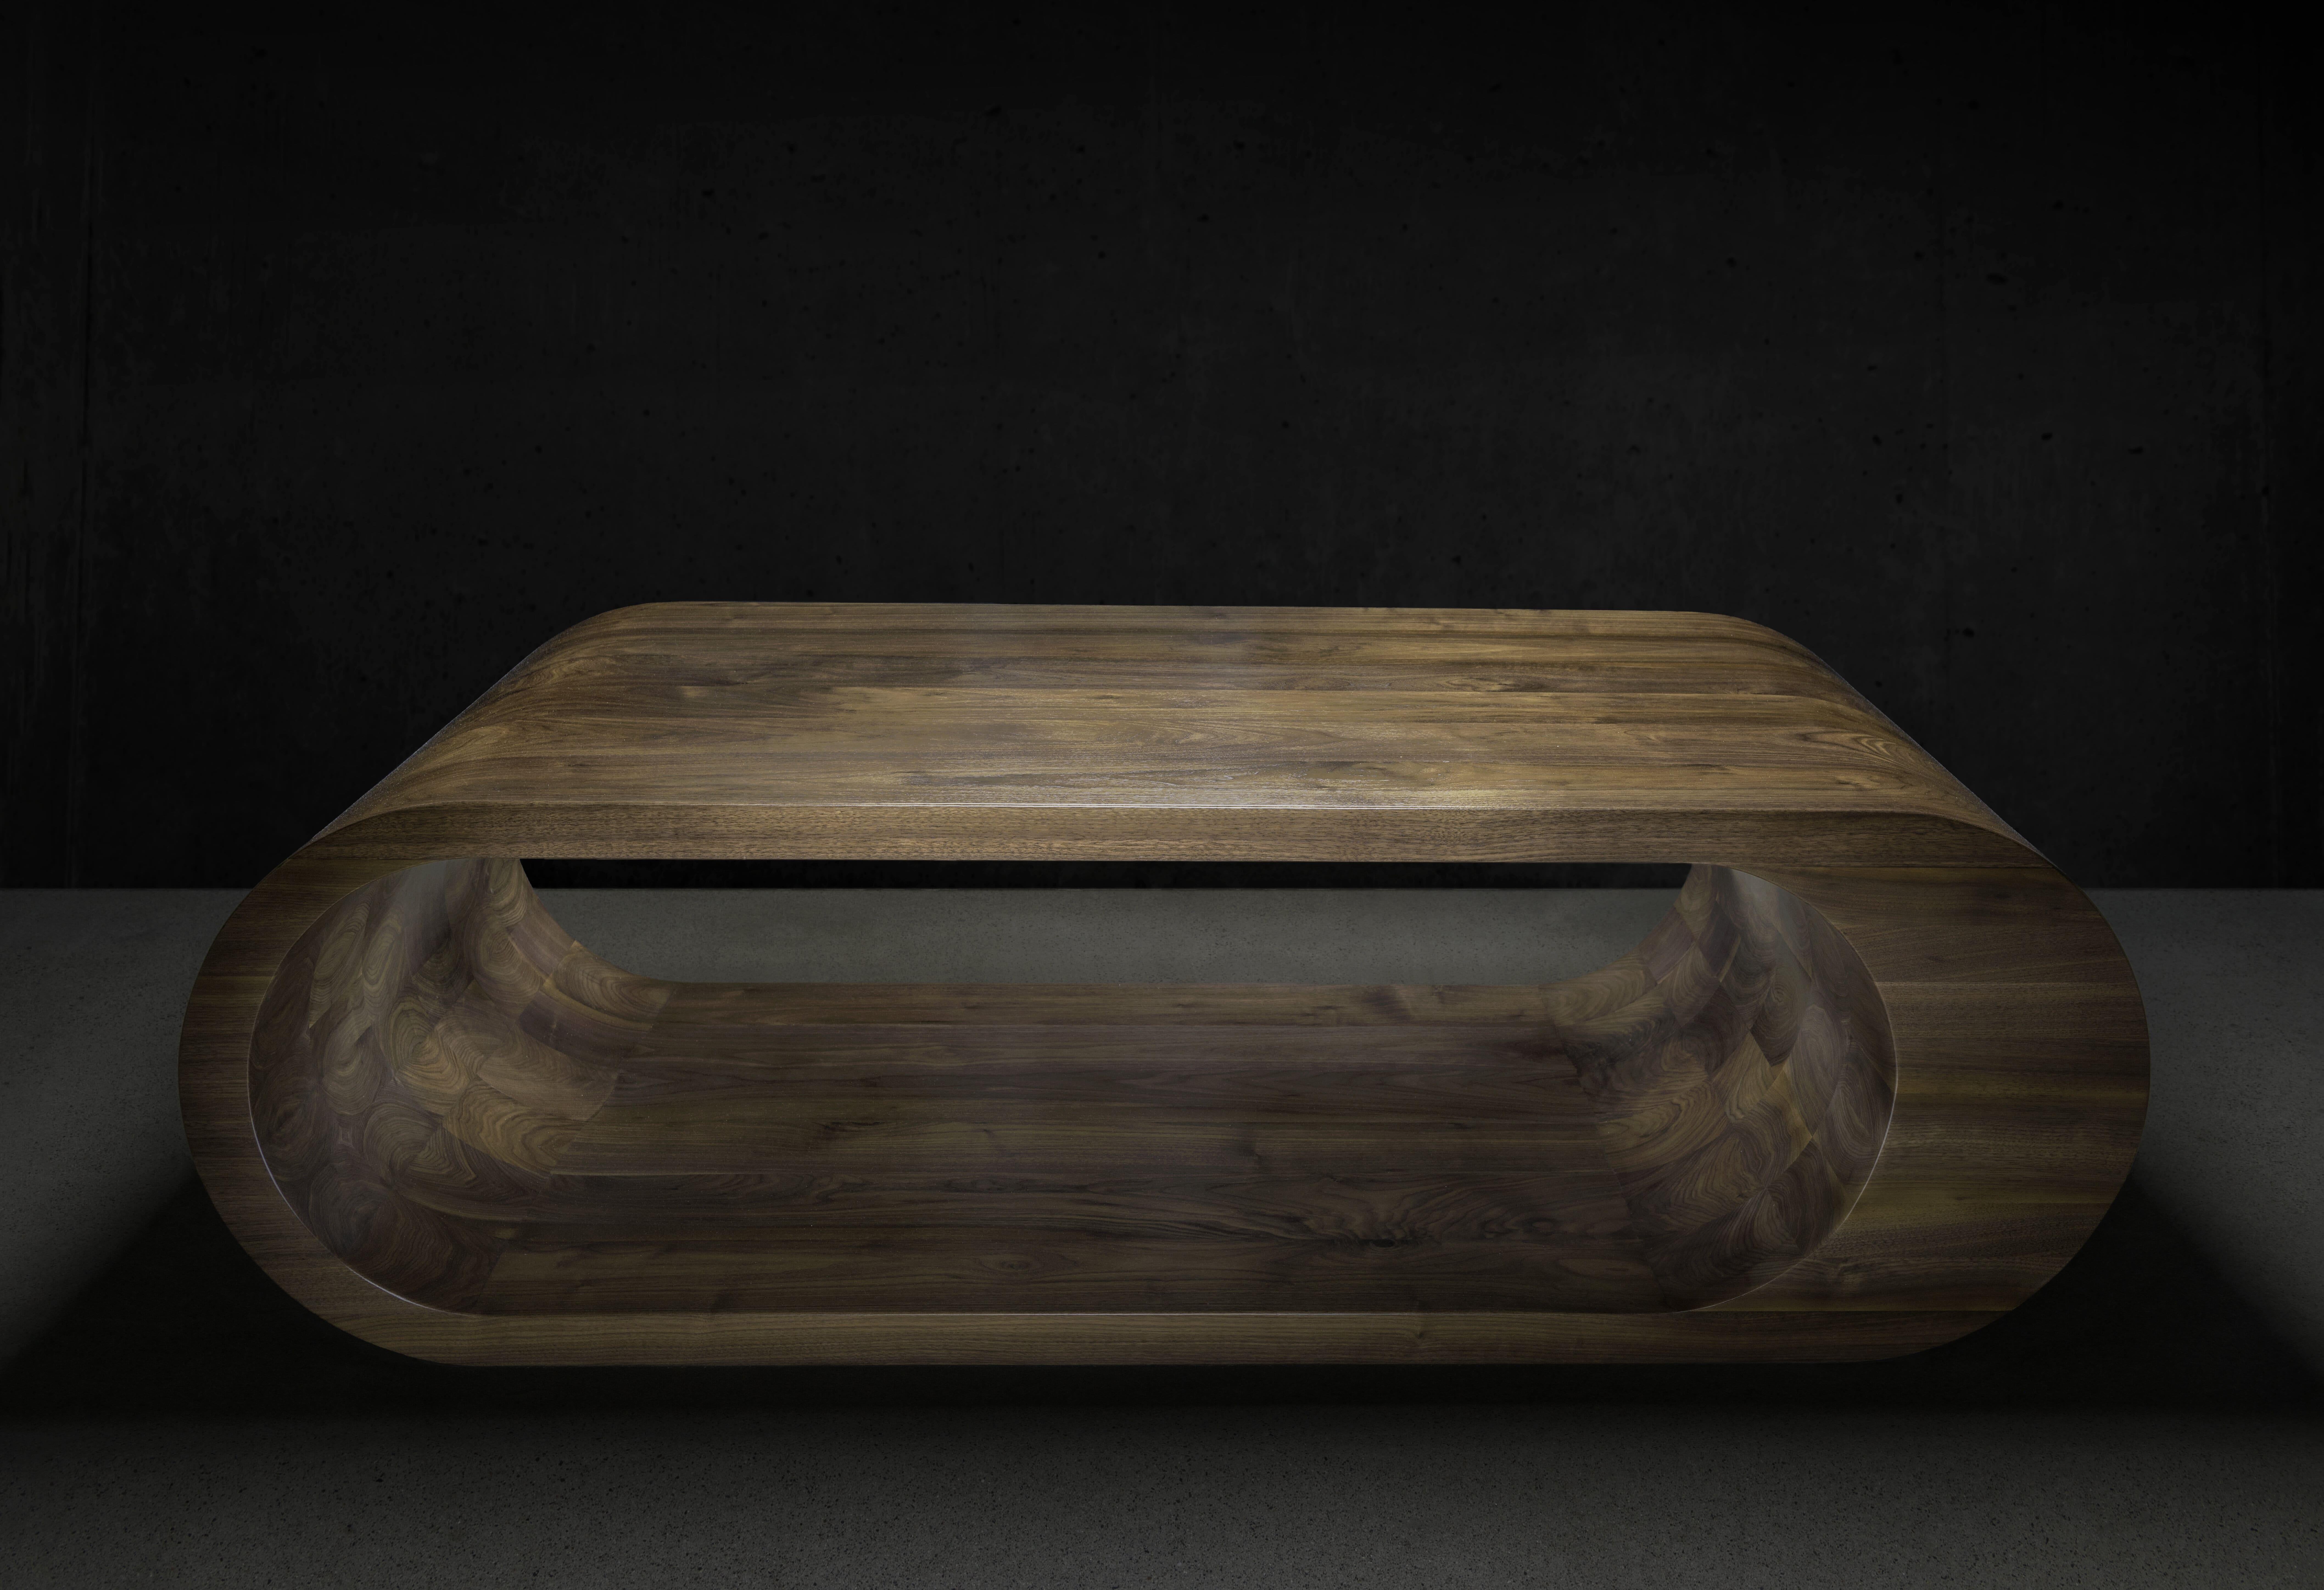 La table basse Infinity fait partie de la collection originale de Peters Thomas.  Fabriqué en noyer noir américain massif.  En raison de sa construction unique, de magnifiques veines de noyer sont visibles sur les côtés et à l'intérieur de la table.